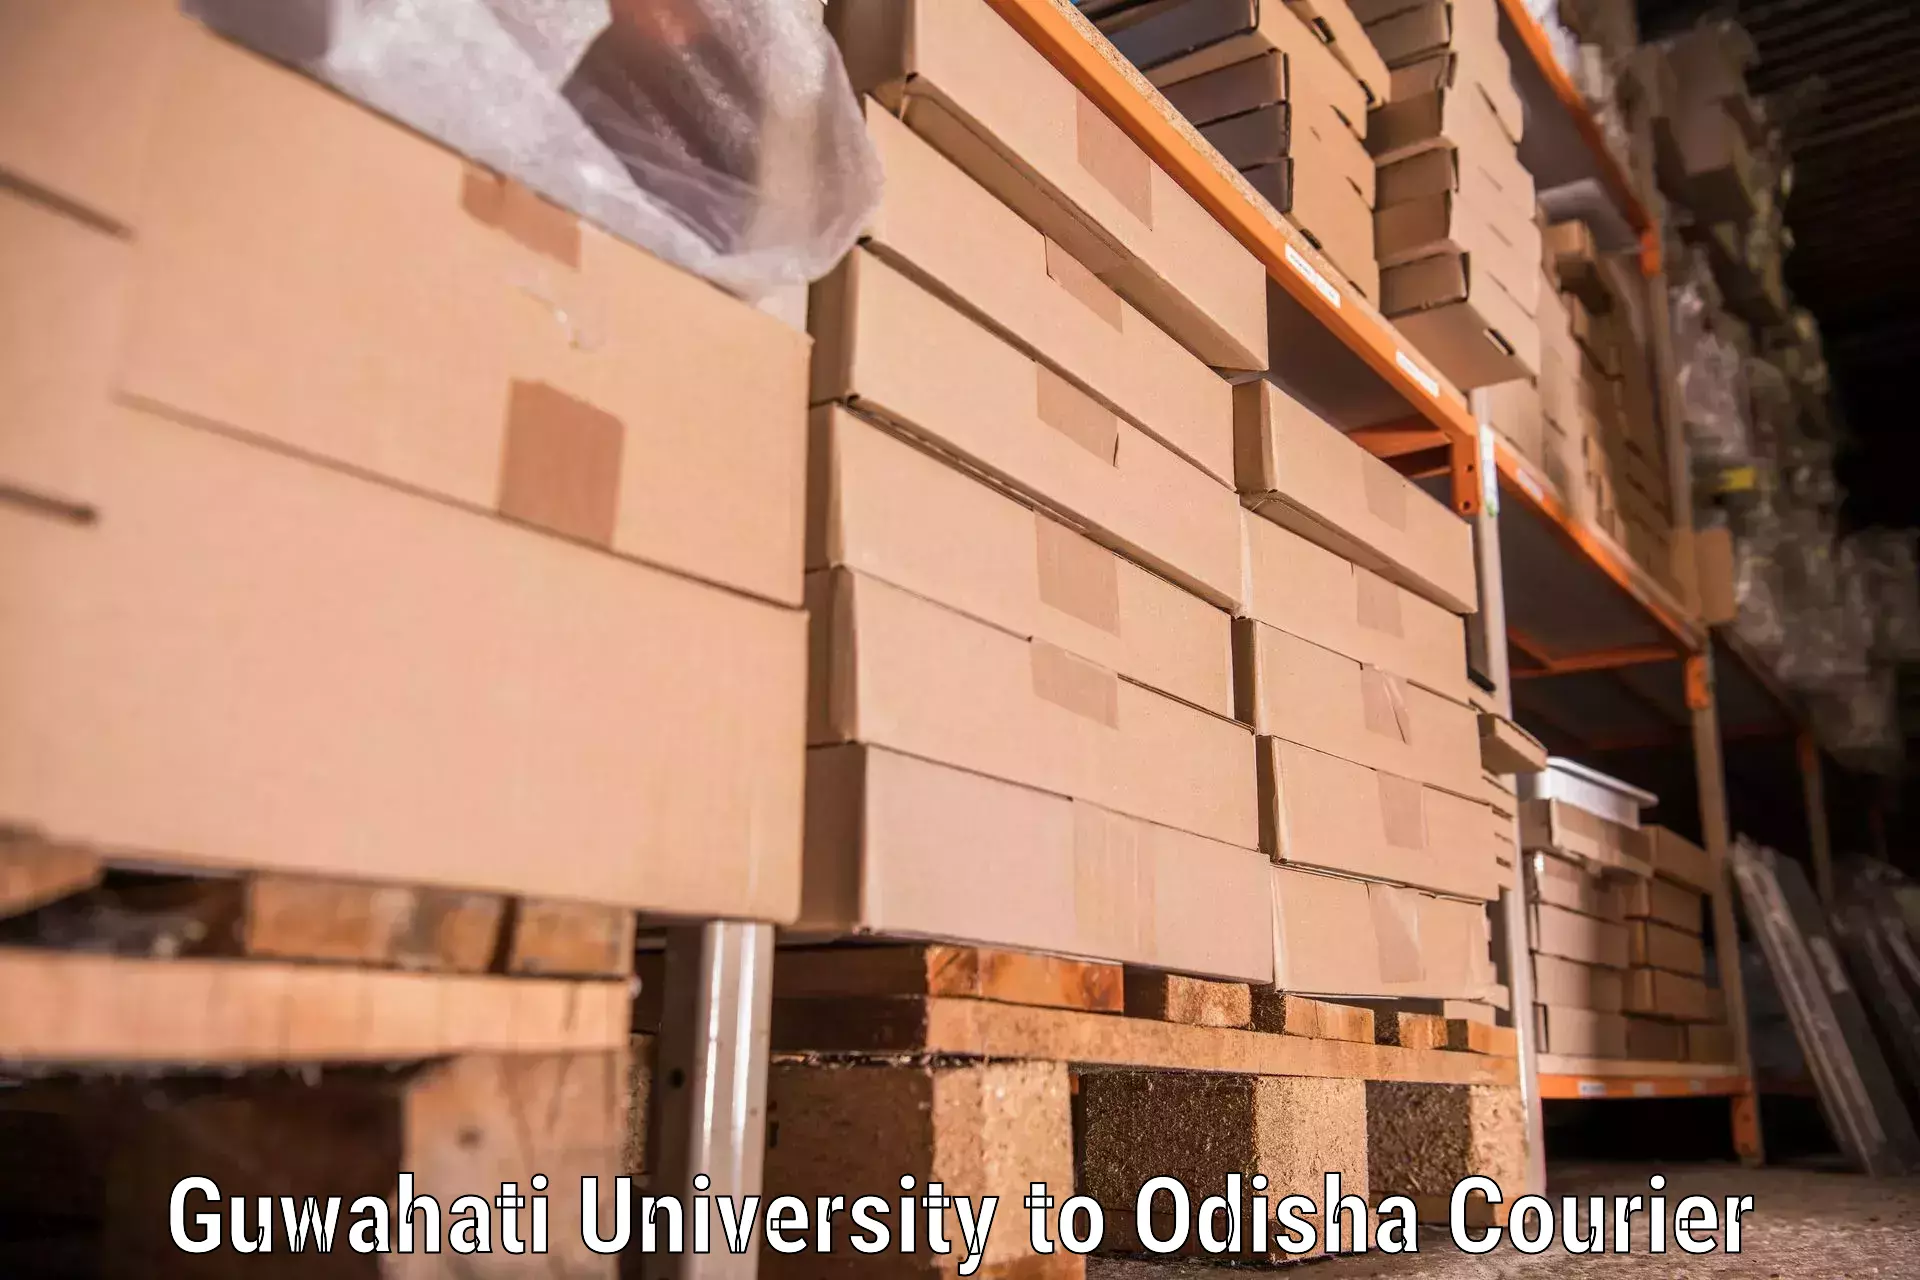 Home goods moving company Guwahati University to Dukura